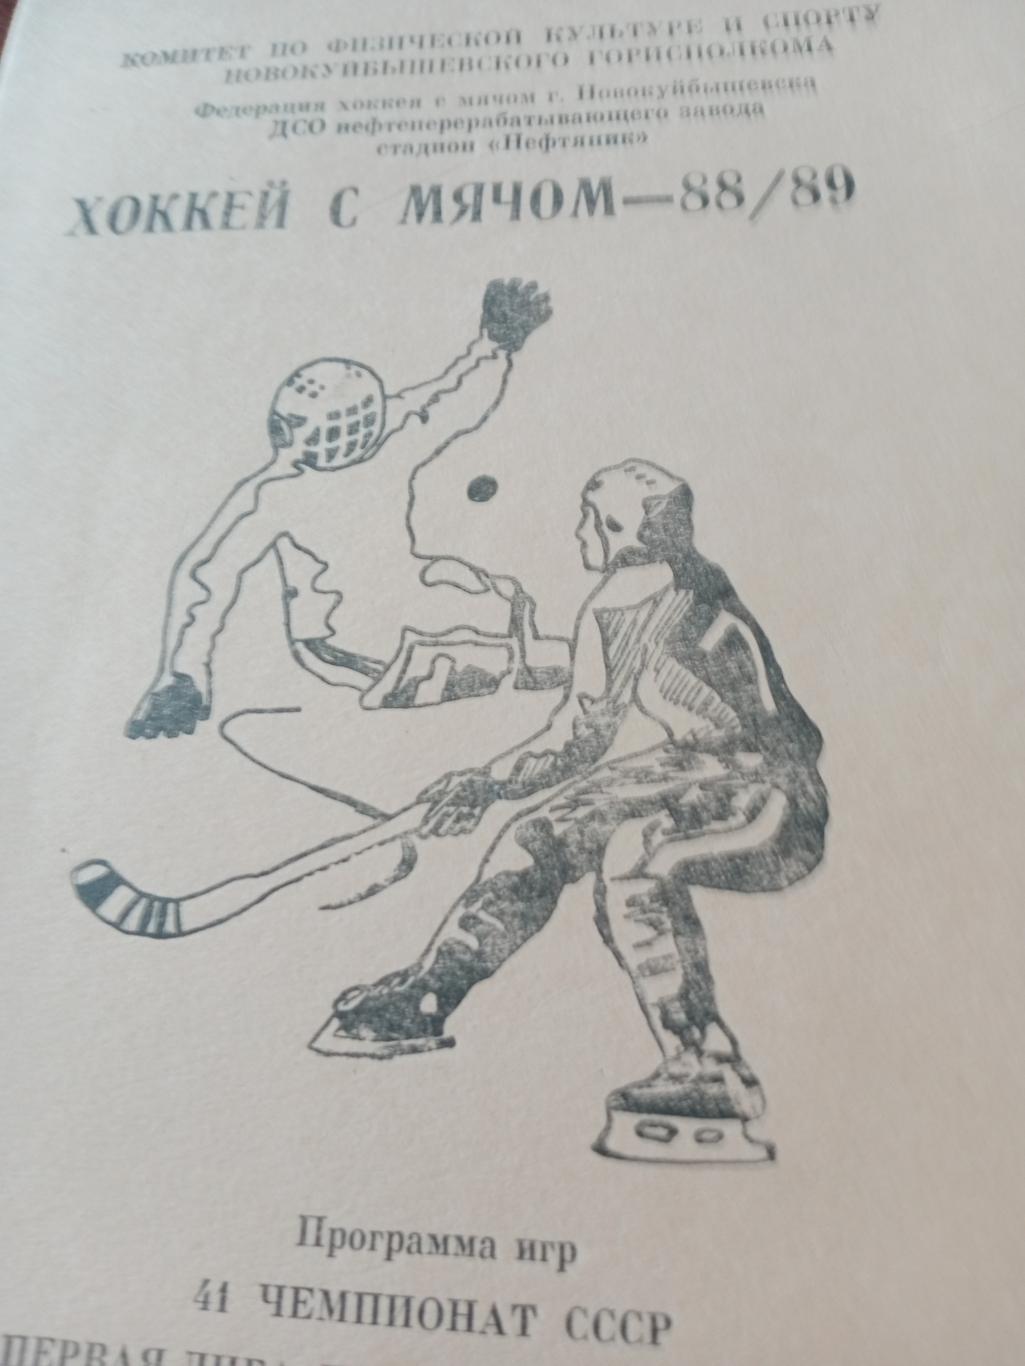 Хоккей с мячом. Новокуйбышевск - 1988/89